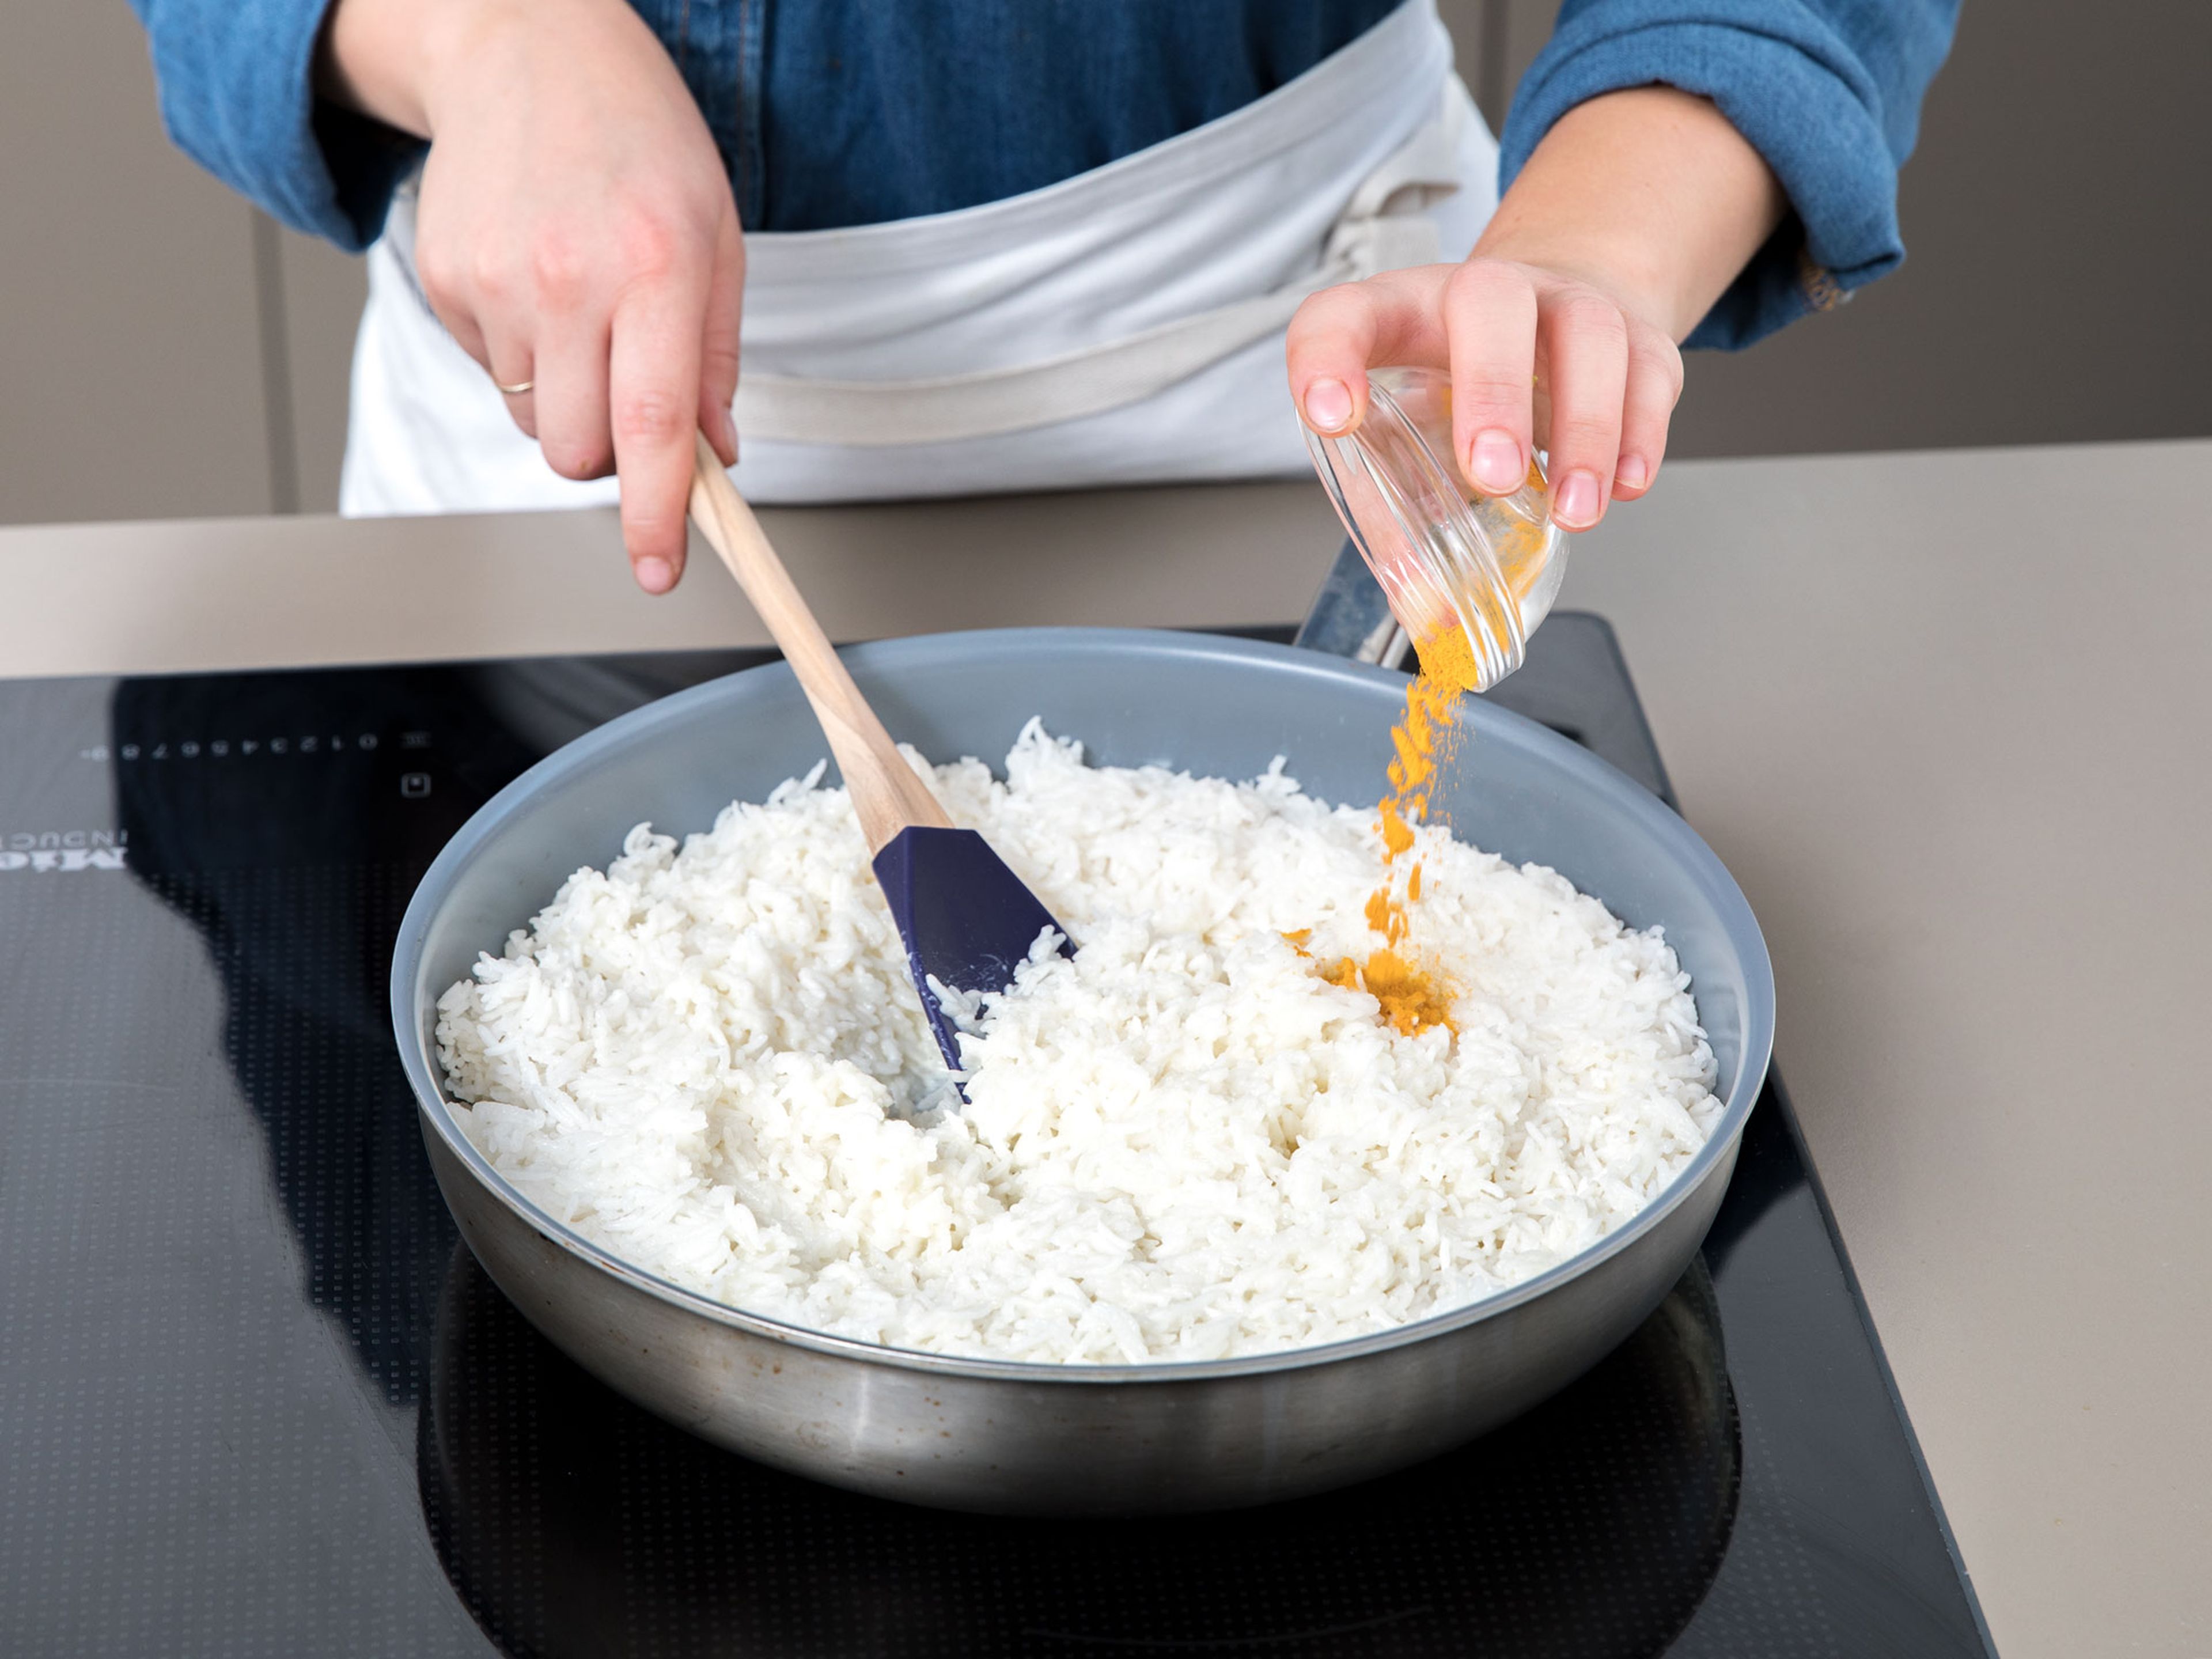 Den vorgekochten Reis, Schlagsahne, Parmesankäse und Kurkuma in eine separate Pfanne geben und durchmengen. Der Reis färbt sich leicht gelb. Ca. 5 Min. köcheln lasse und dabei hin und wieder umrühren.